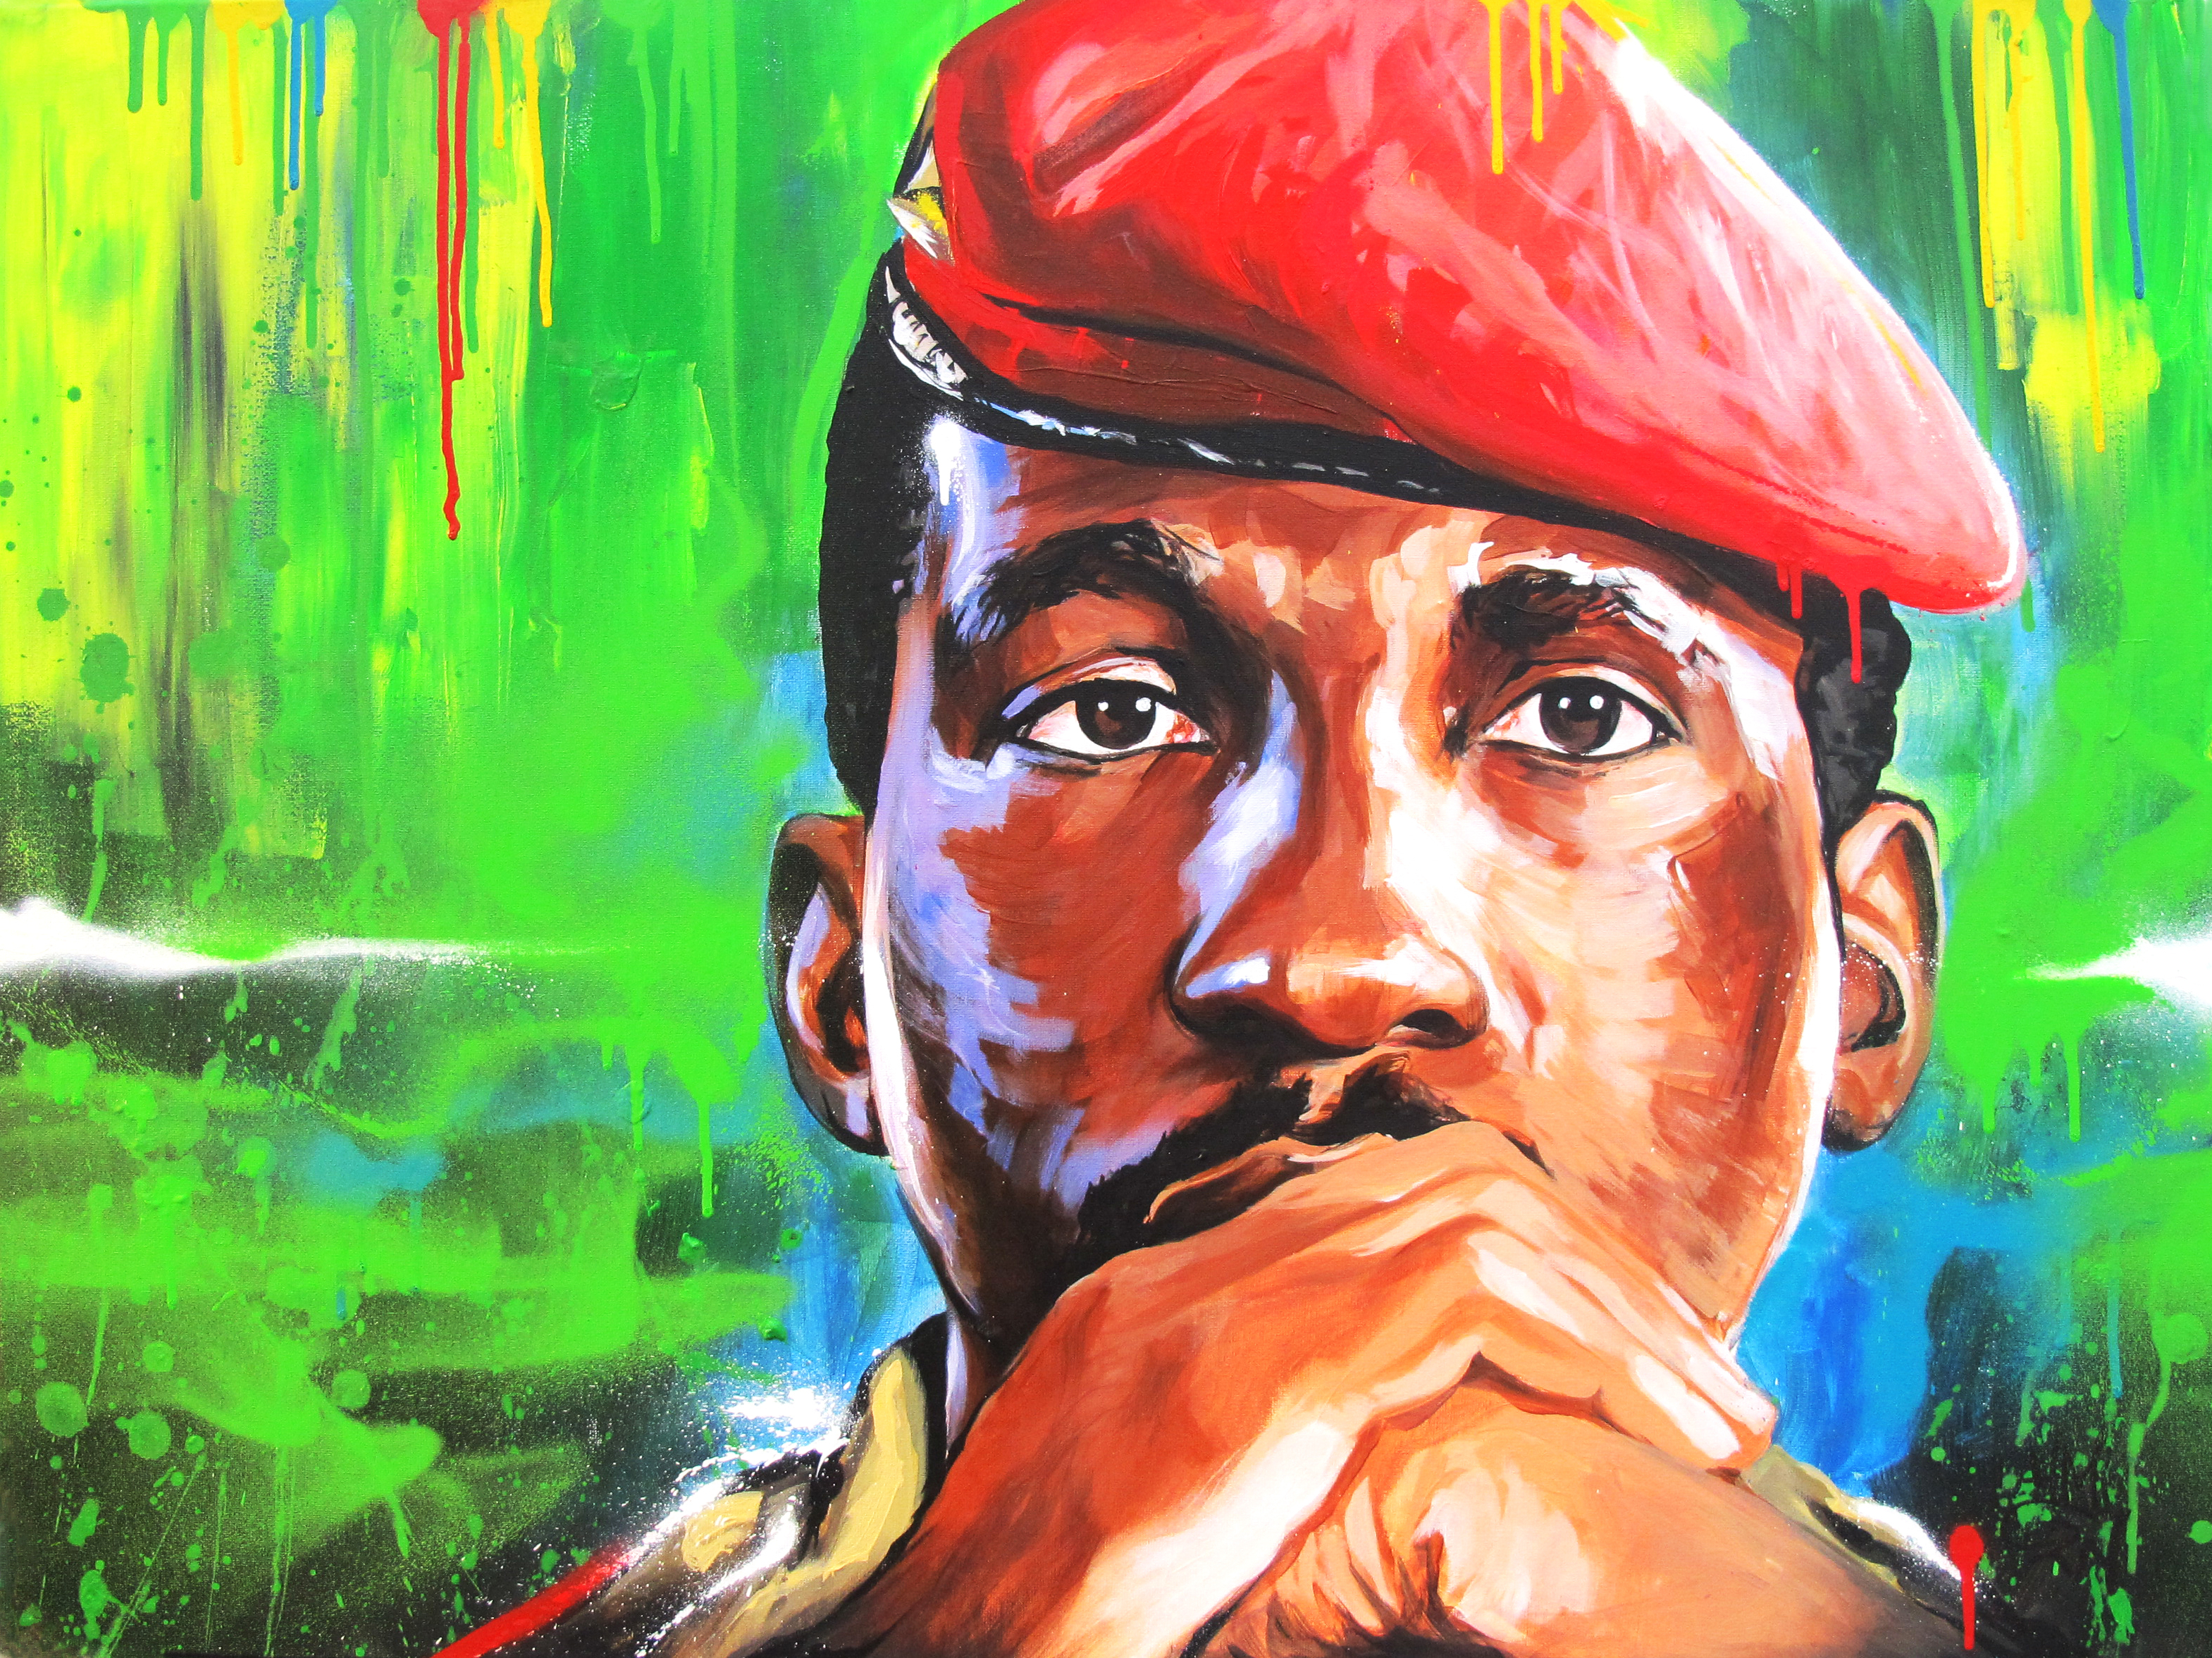 Le triomphe de l’Afrique passera par le triomphe des femmes africaines. Ce n’est pas moi qui le dis, c’est Sankara !